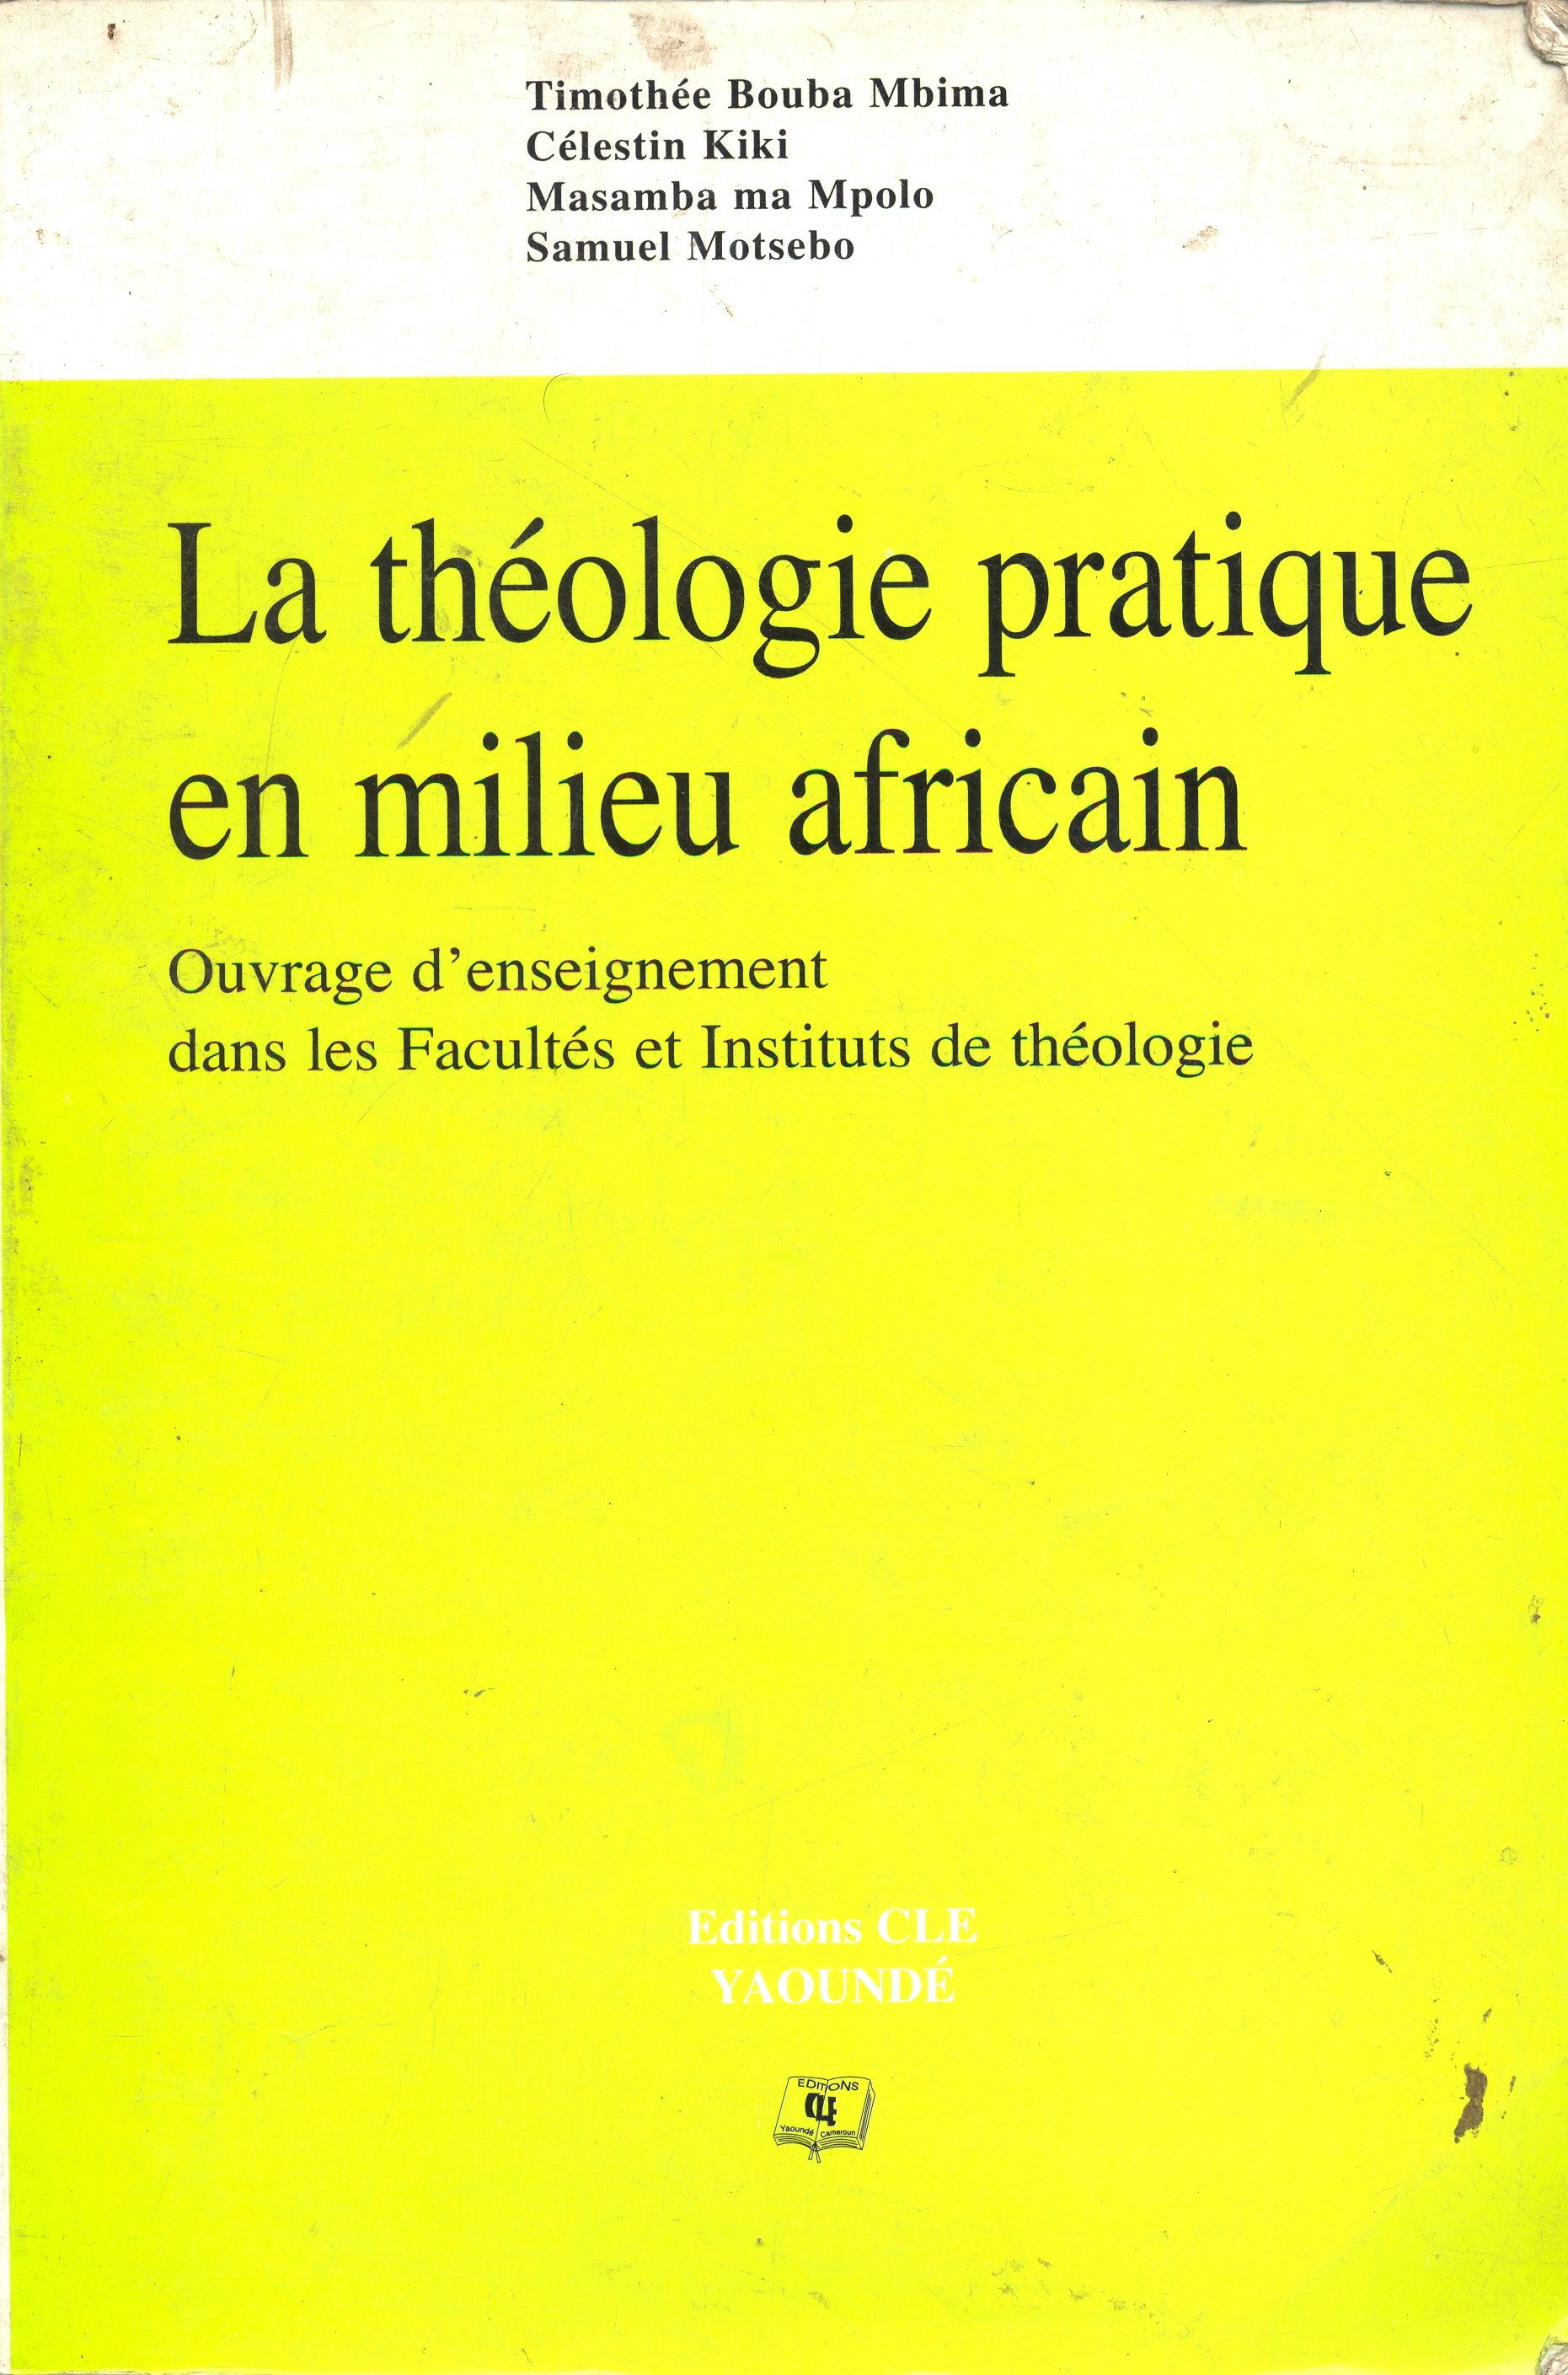 La théologie pratique en milieu africain